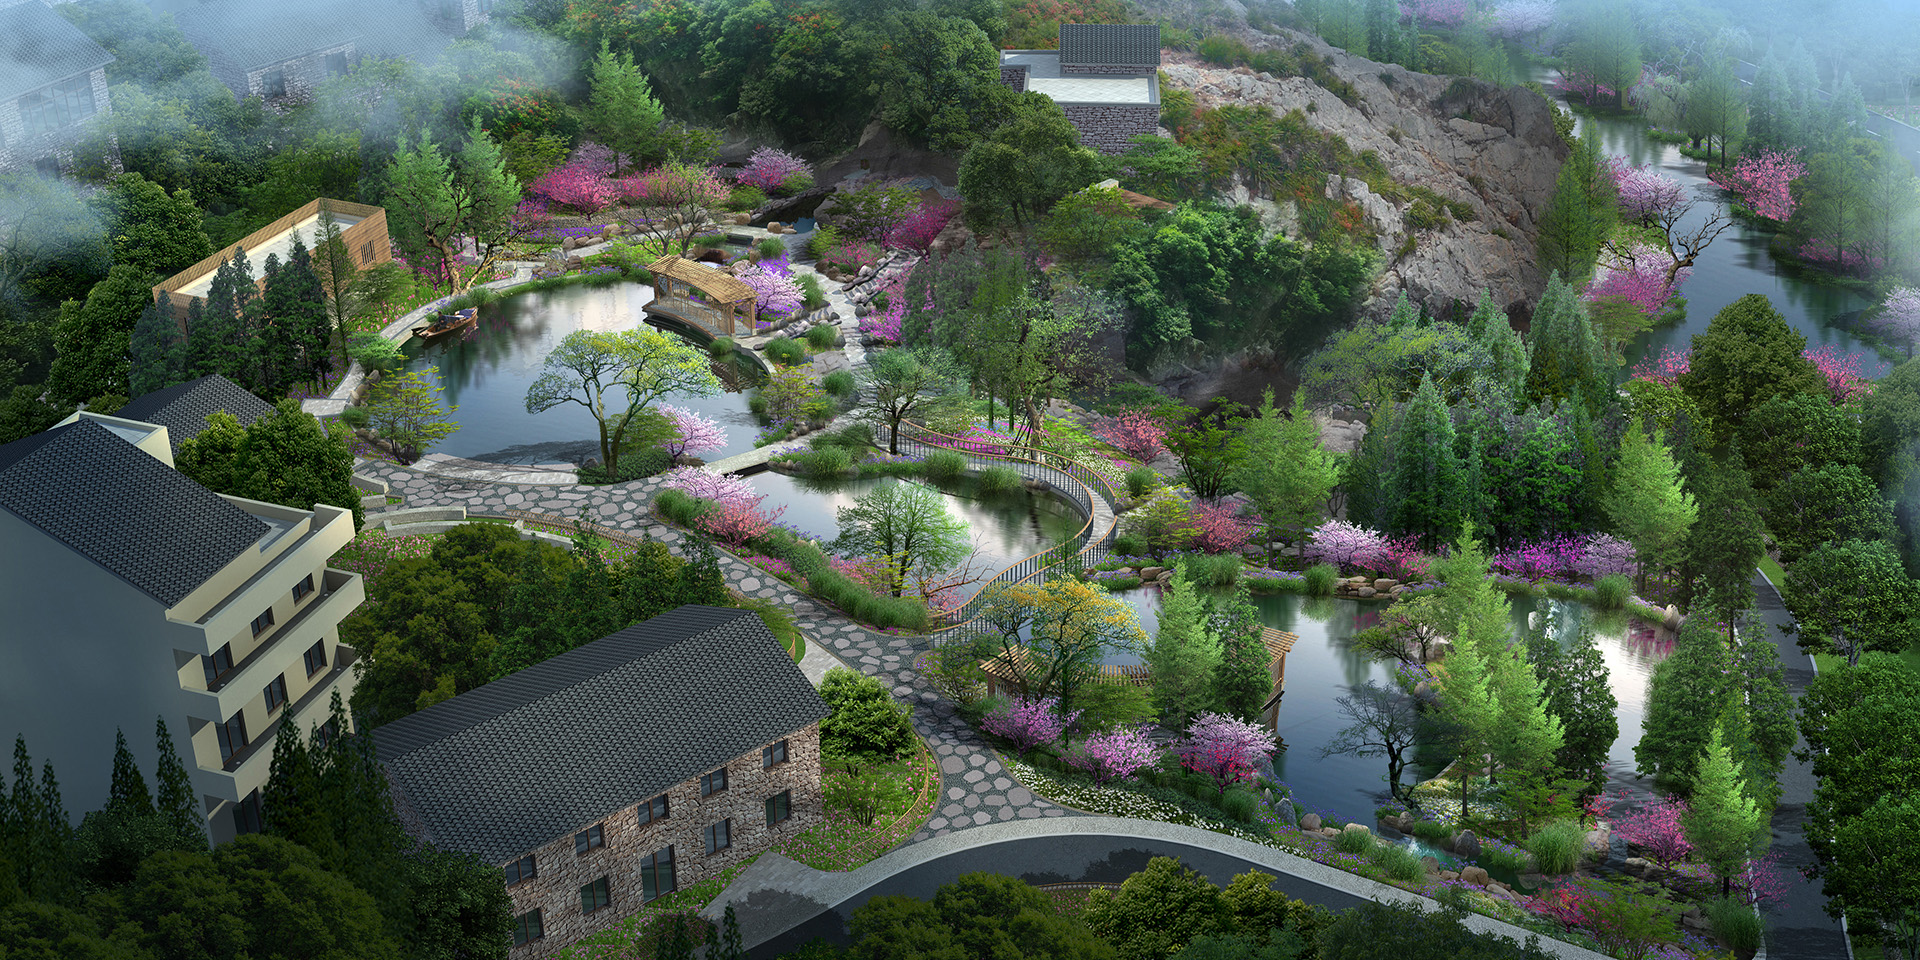  Reservoir Park Landscape Design In Shanqian Village